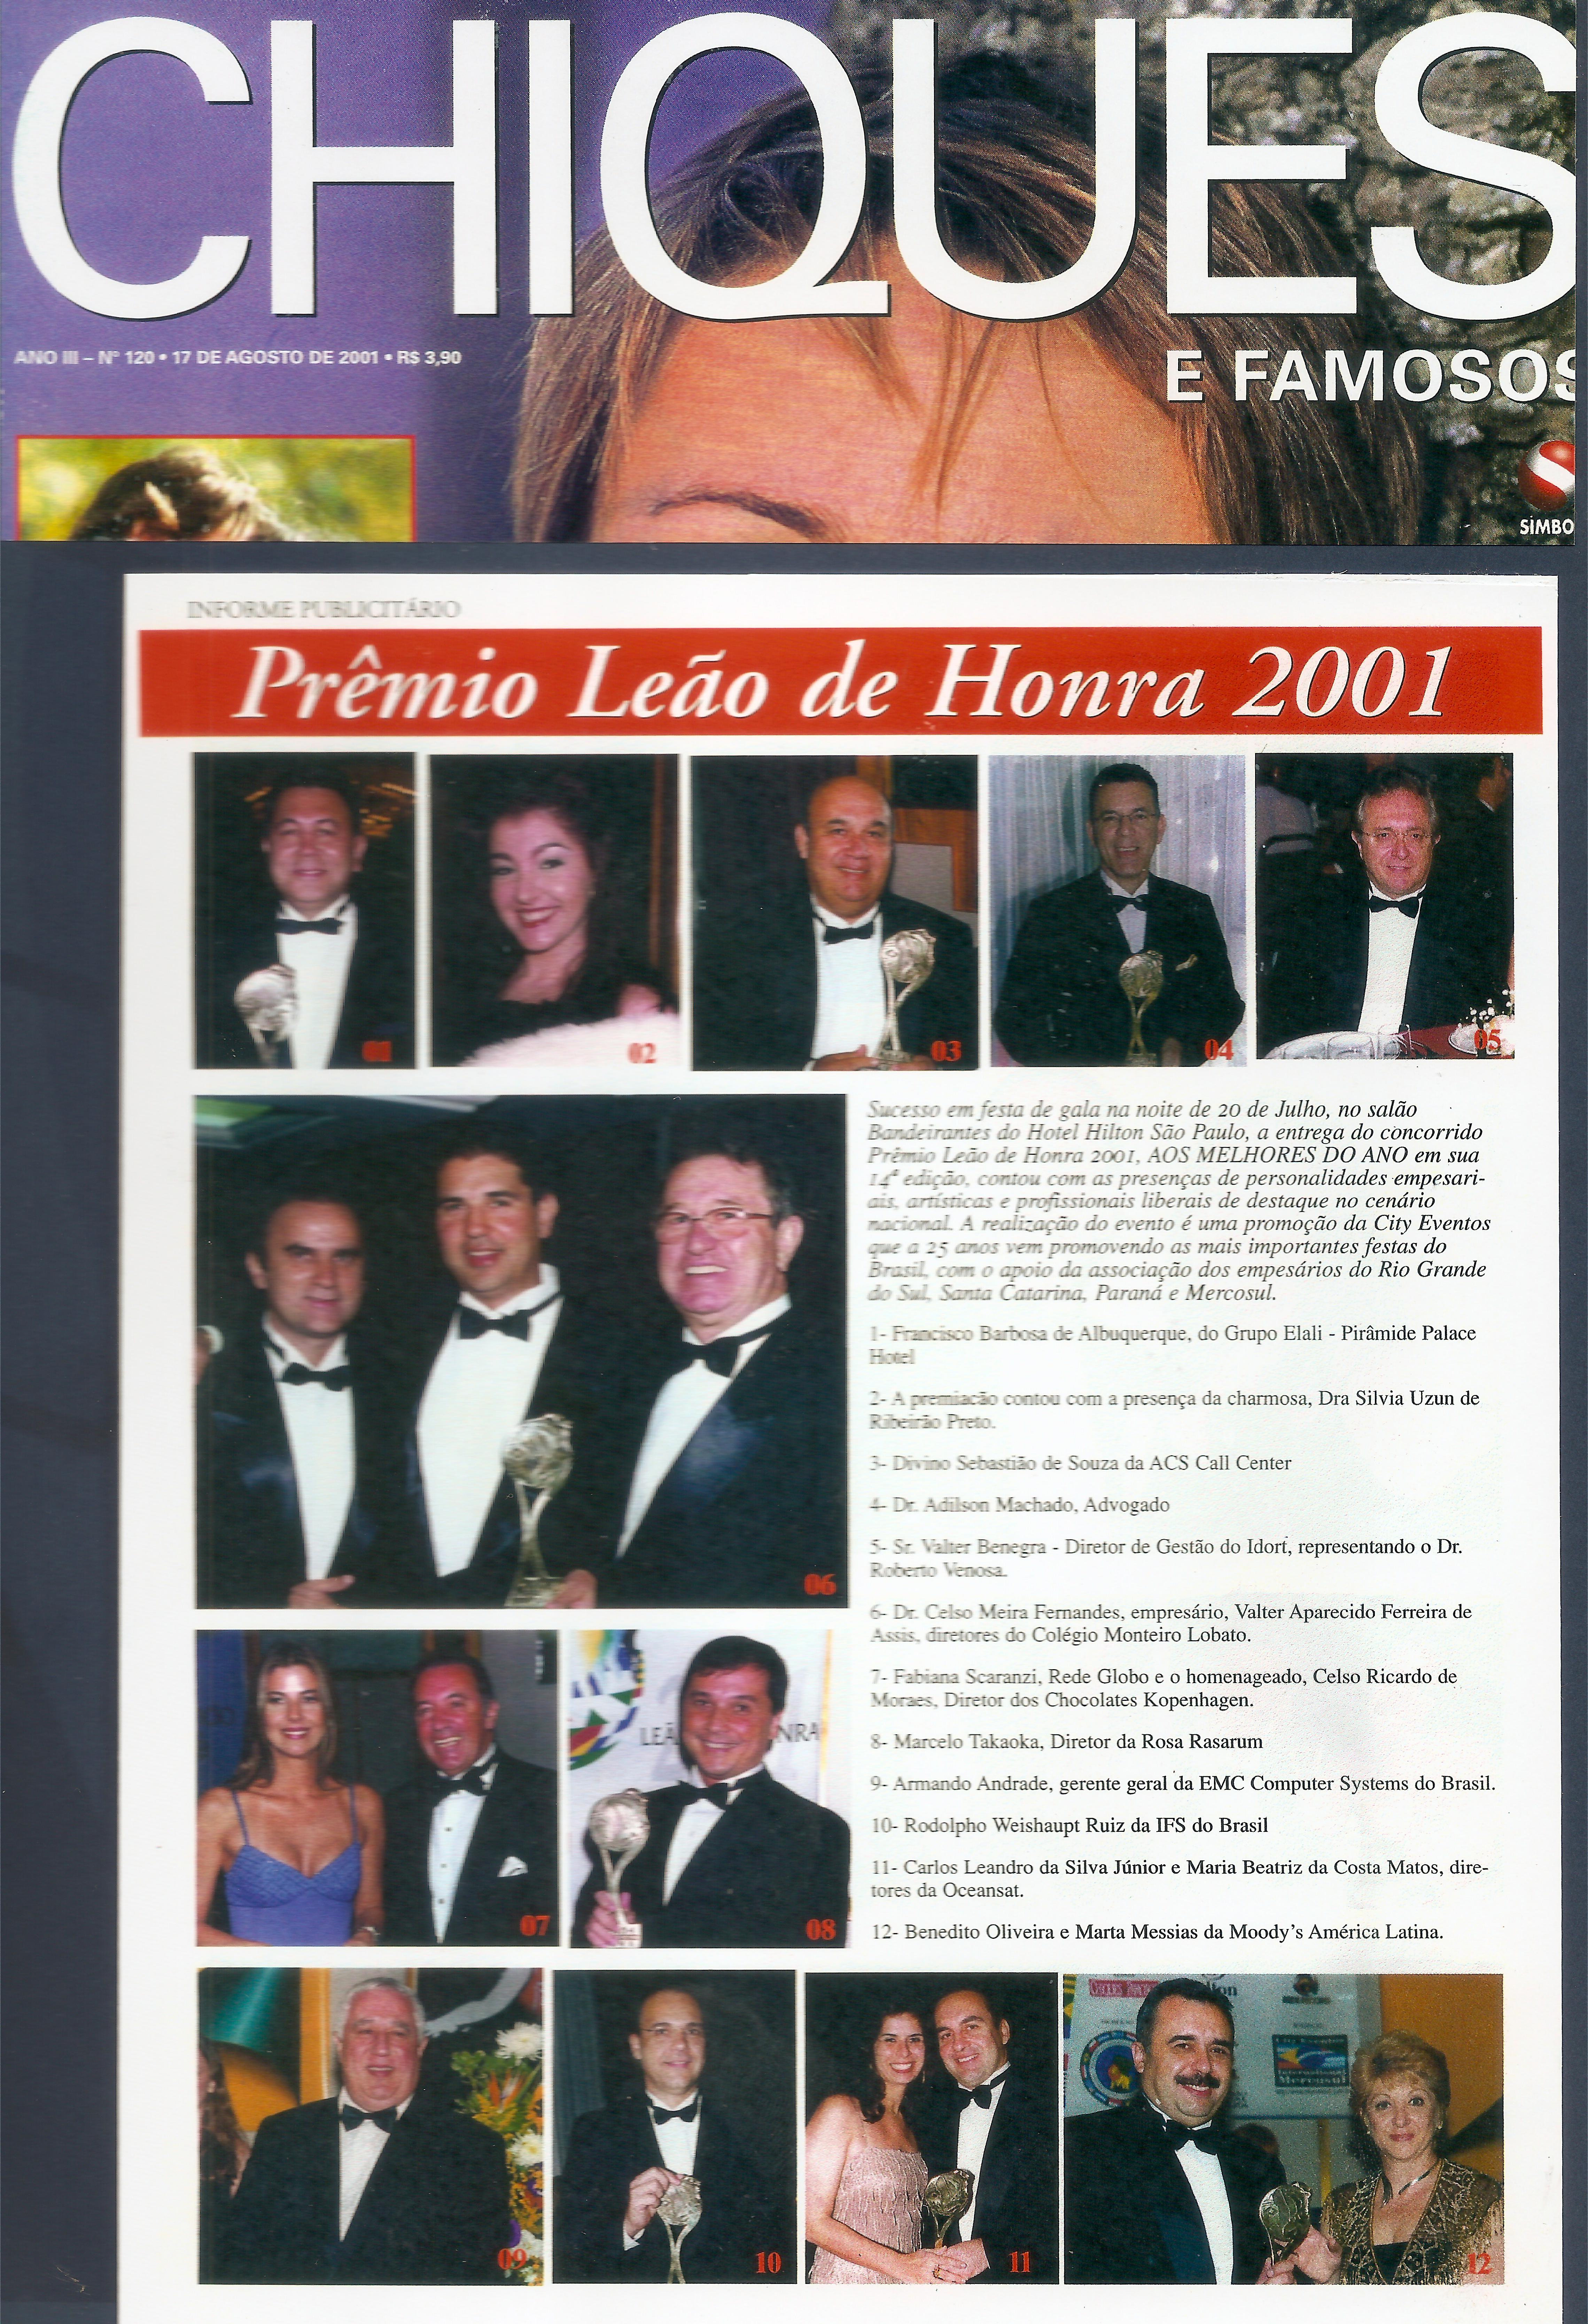 Os melhores do ano - Troféu Leão de Honra 2001